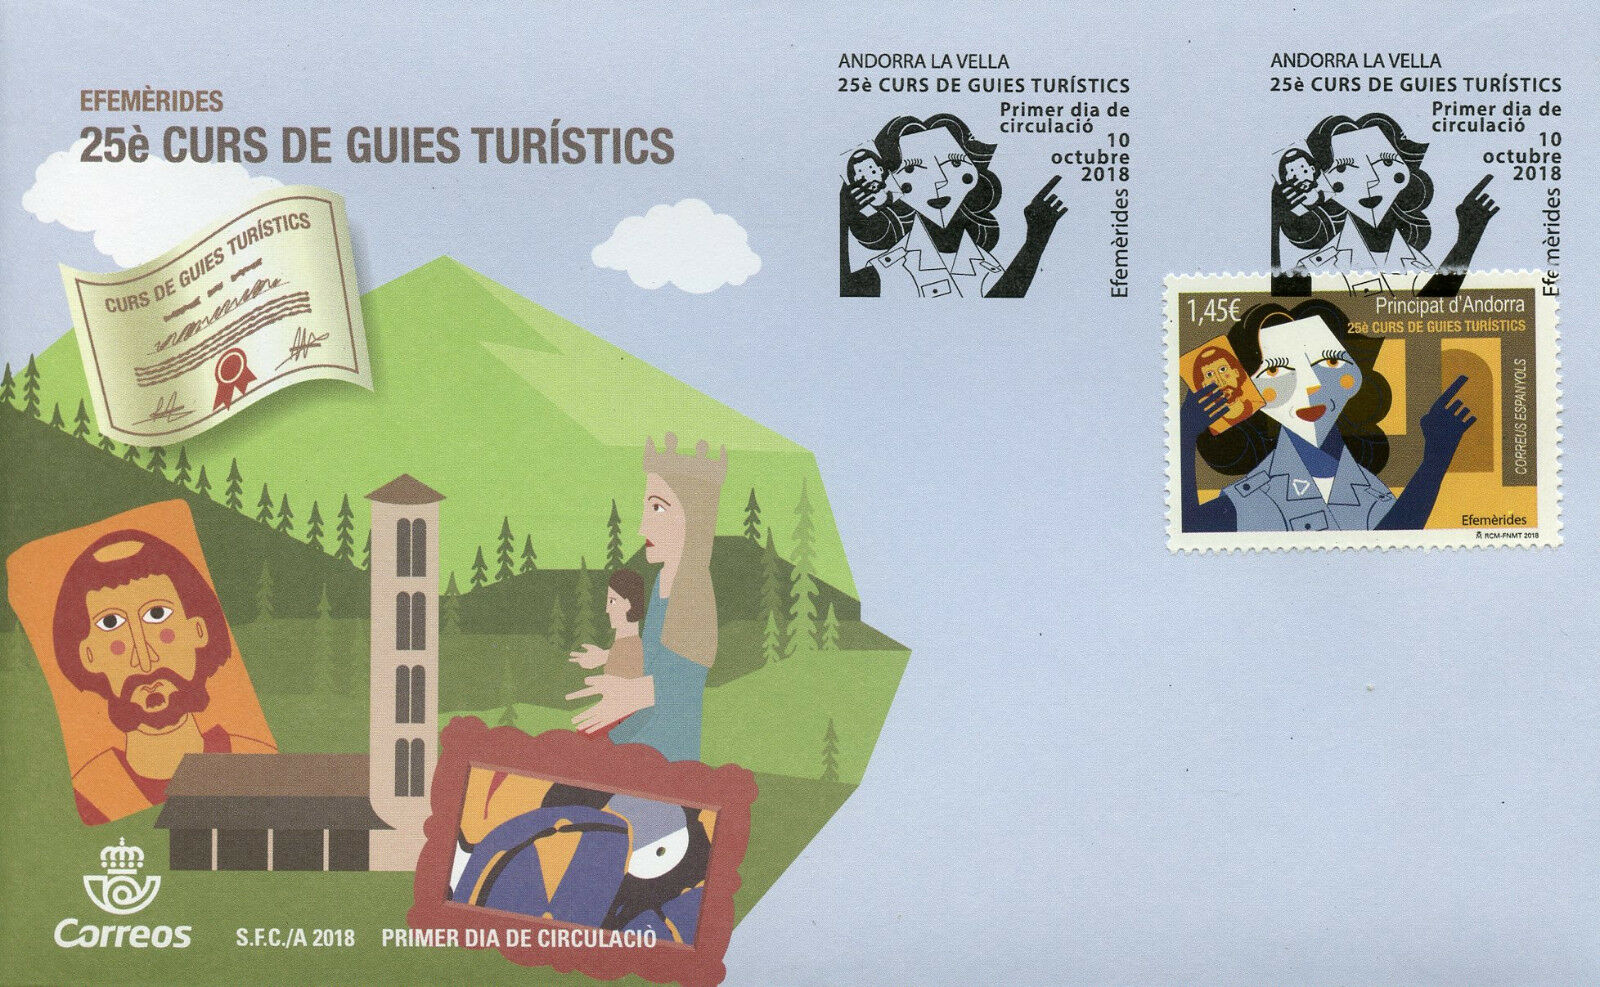 Spanish Andorra 2018 FDC Cultural Guides Curs de Guies Culturals 1v Cover Stamps